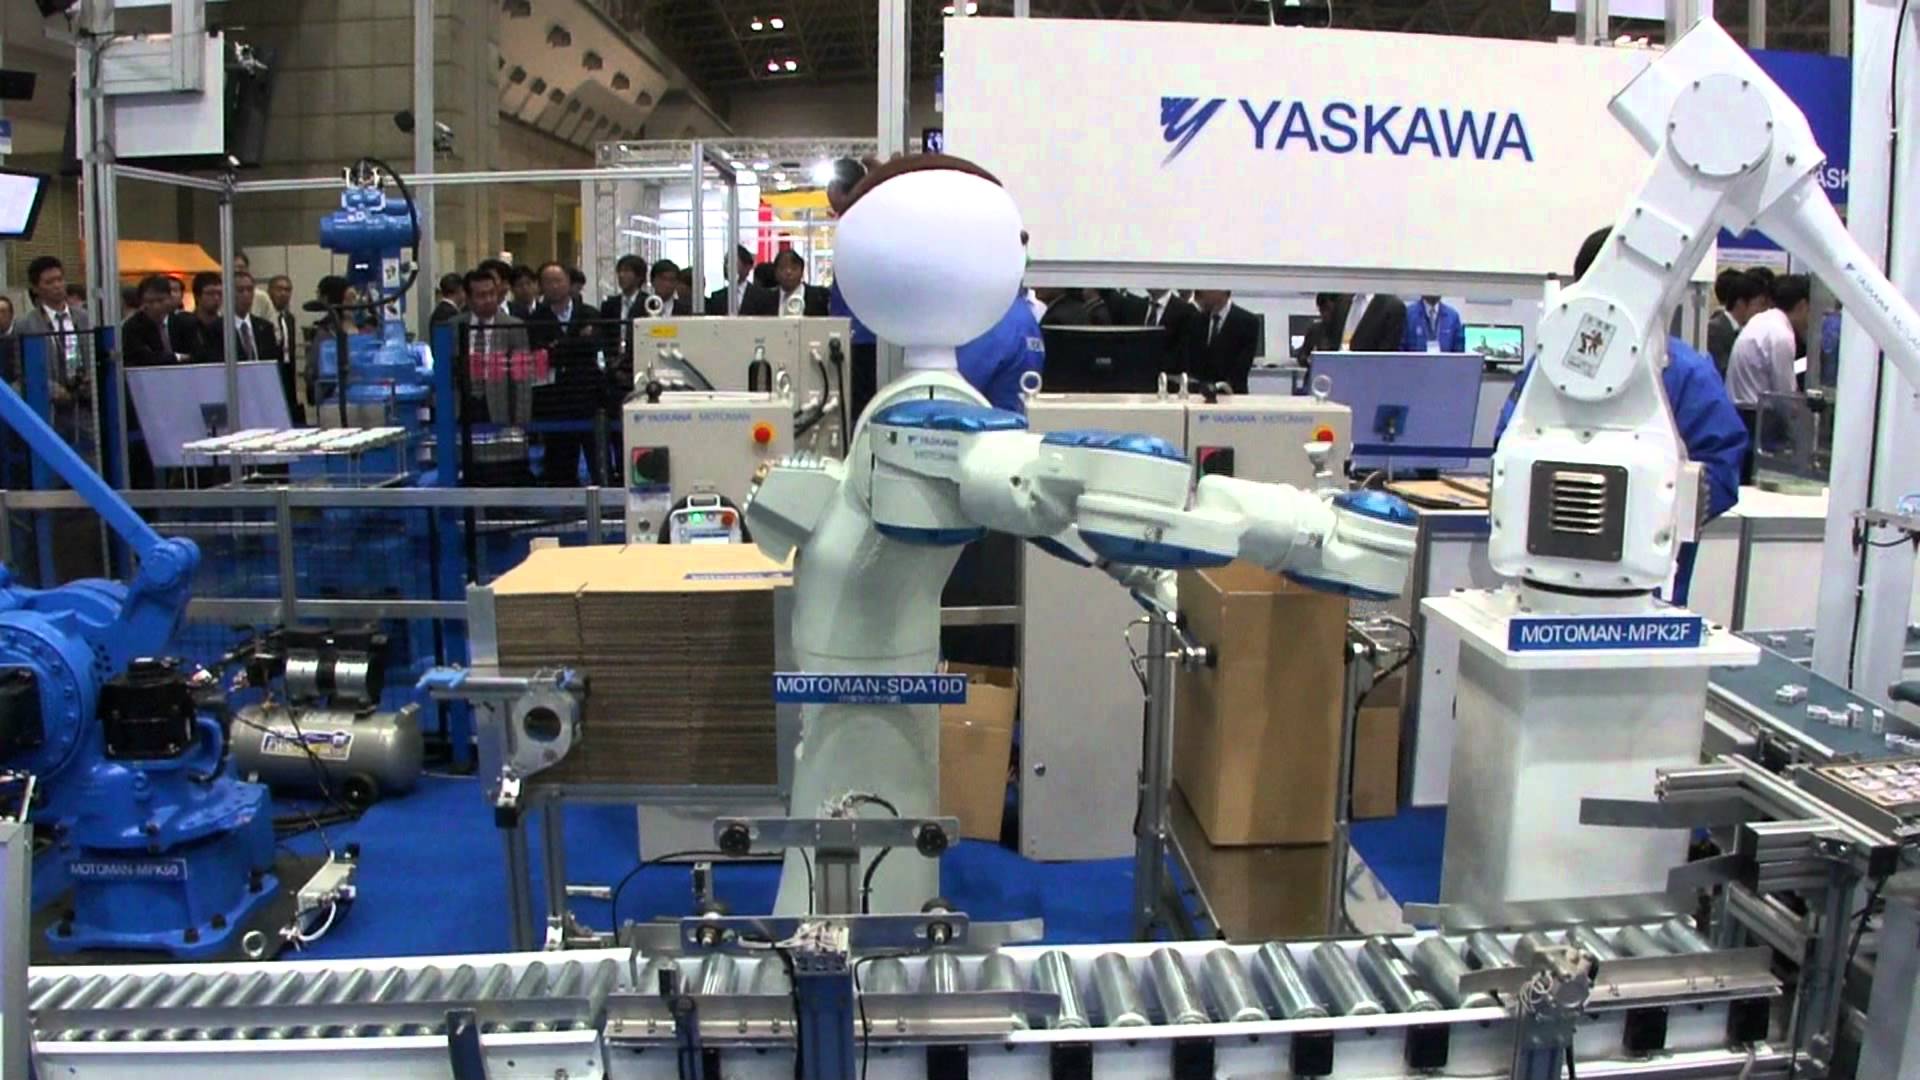 Robot Yaskawa